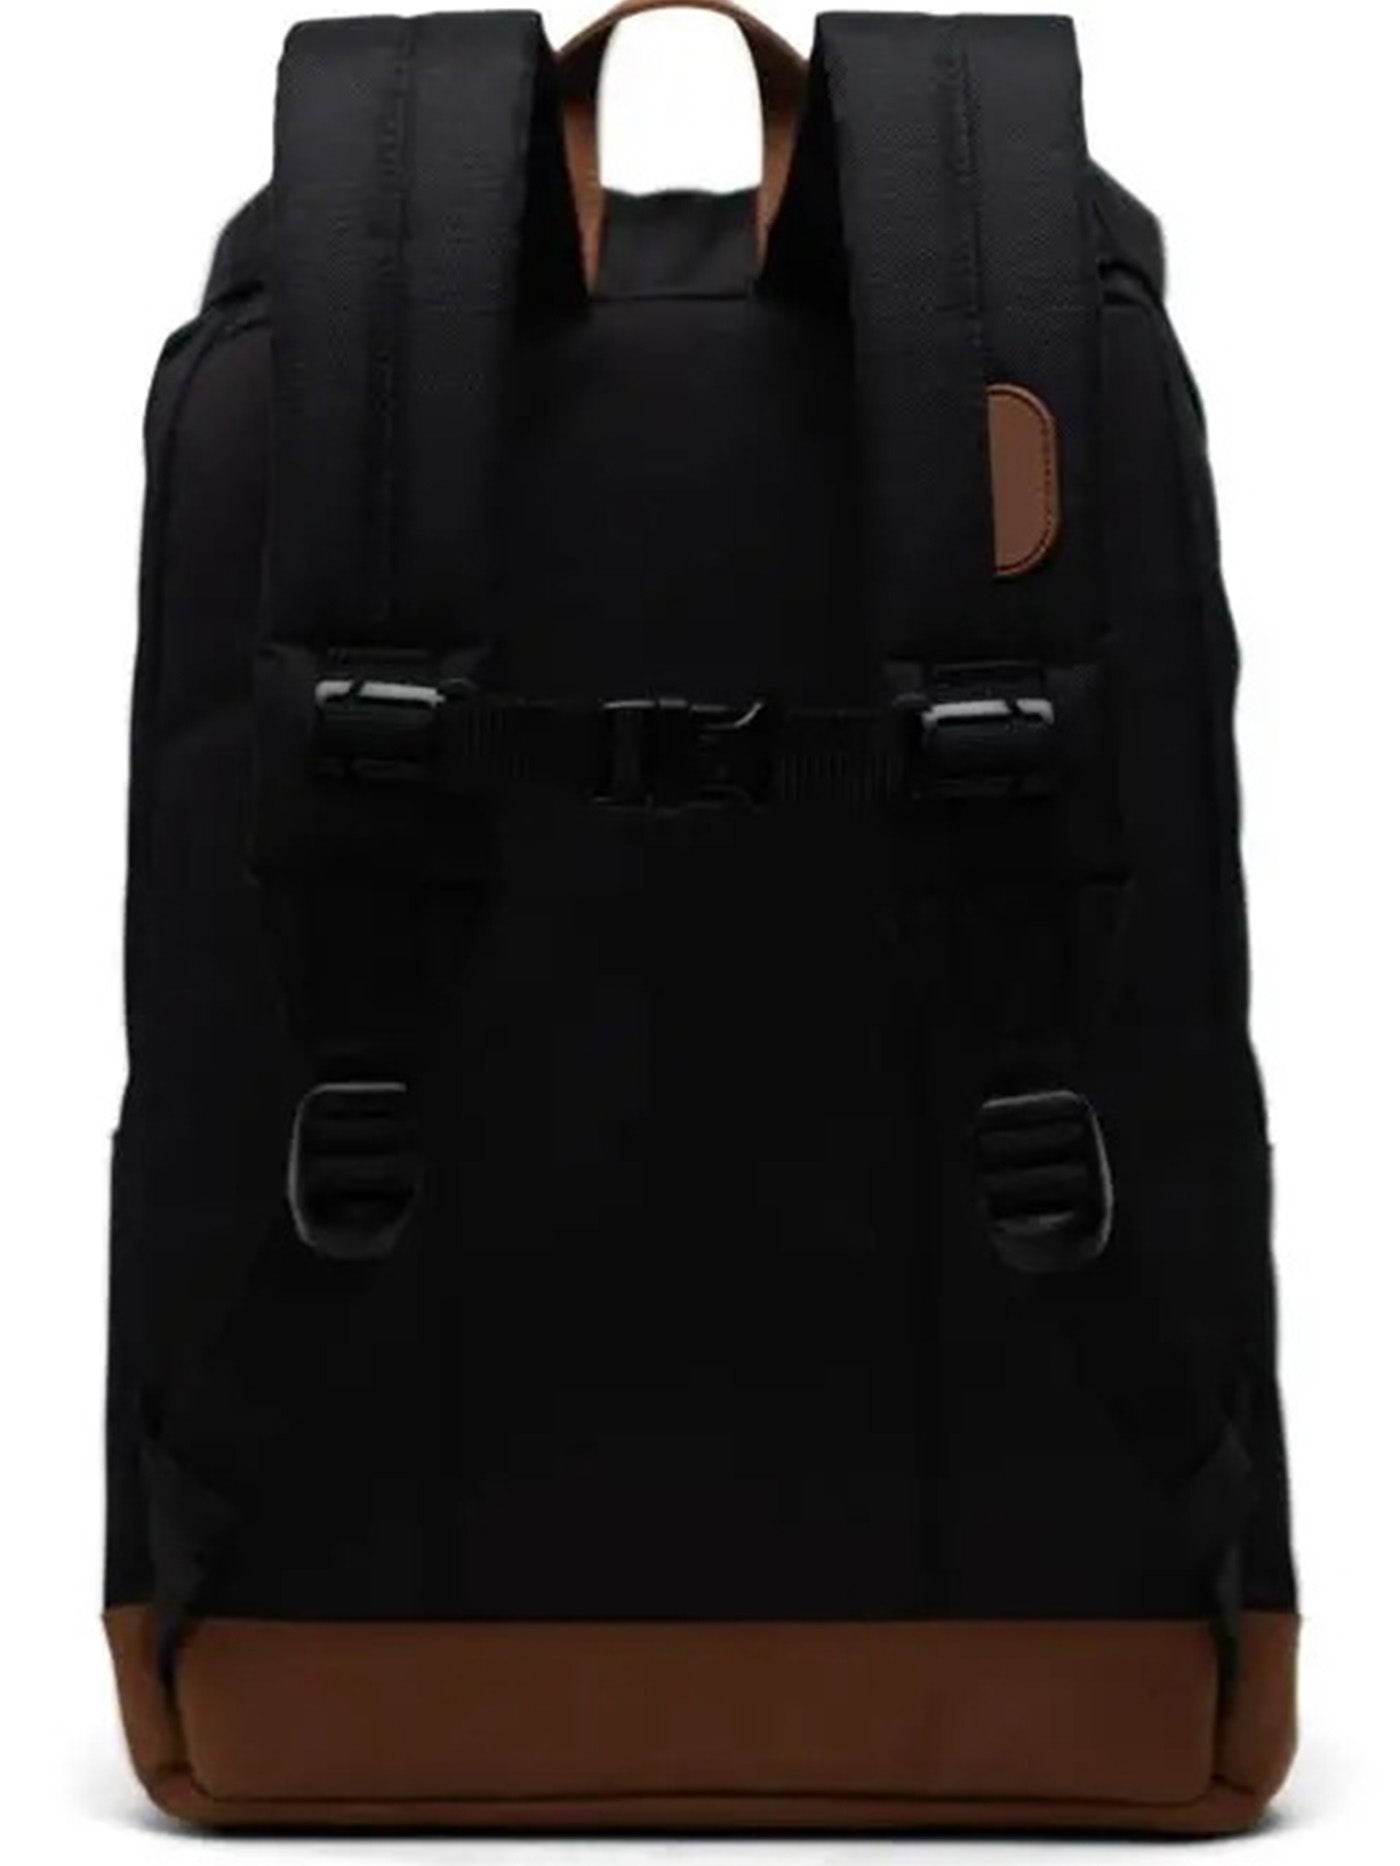 Herschel Retreat Backpack